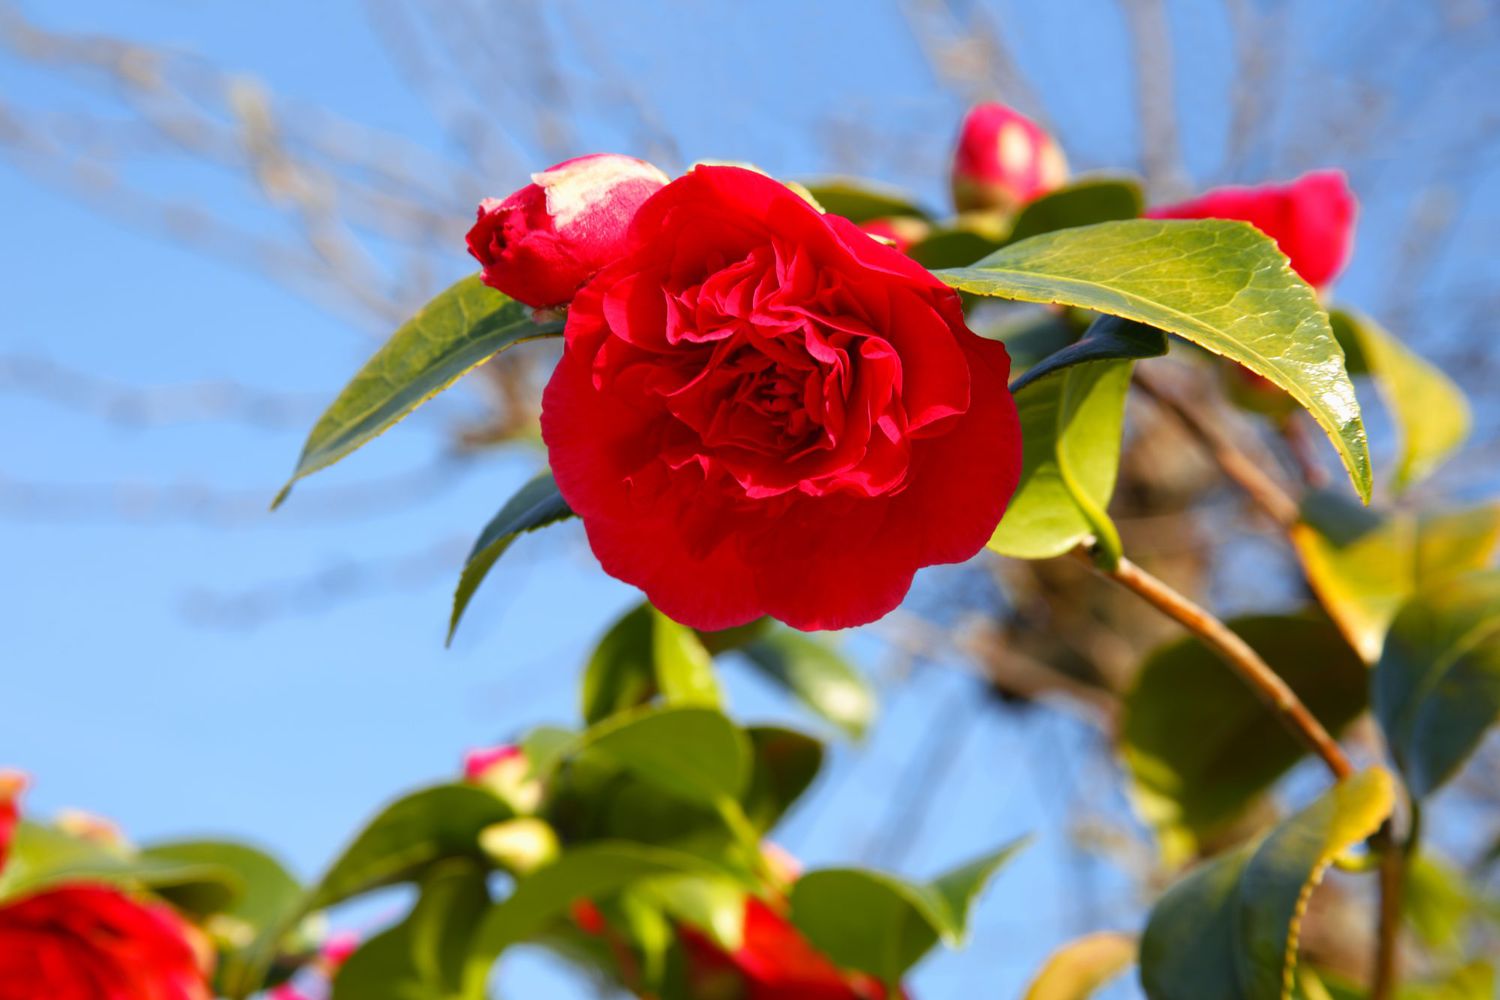 Bonanza Camellia